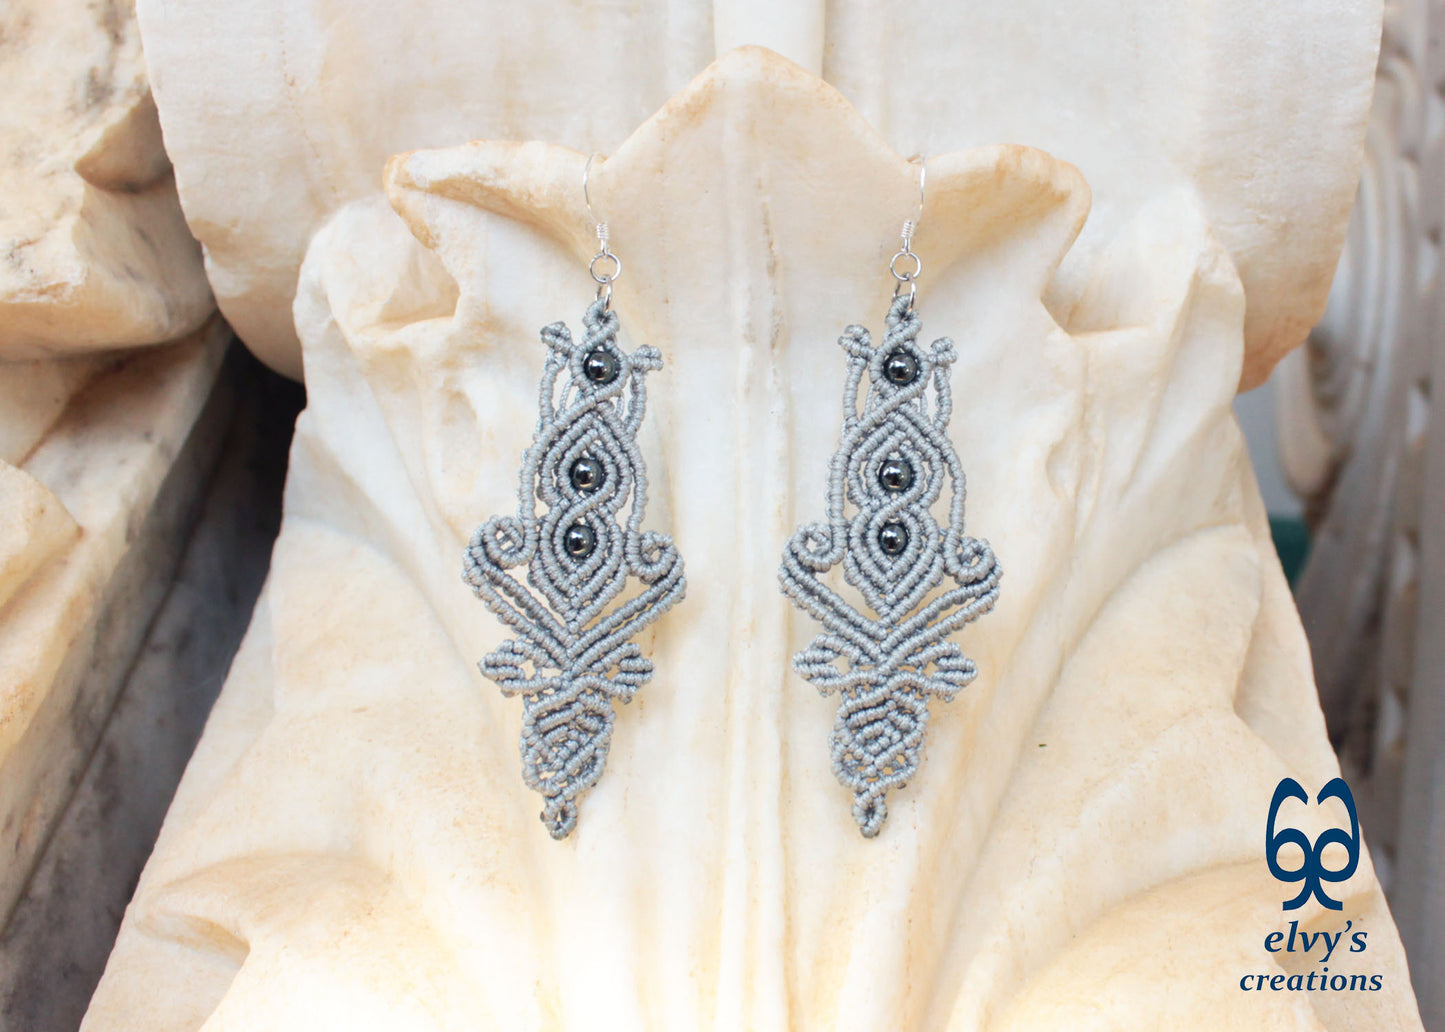 Macrame Earrings with Hematite Gemstones Boho Dangle, Μακραμέ Σκουλαρίκια με Κρυστάλλους Αιματίτη